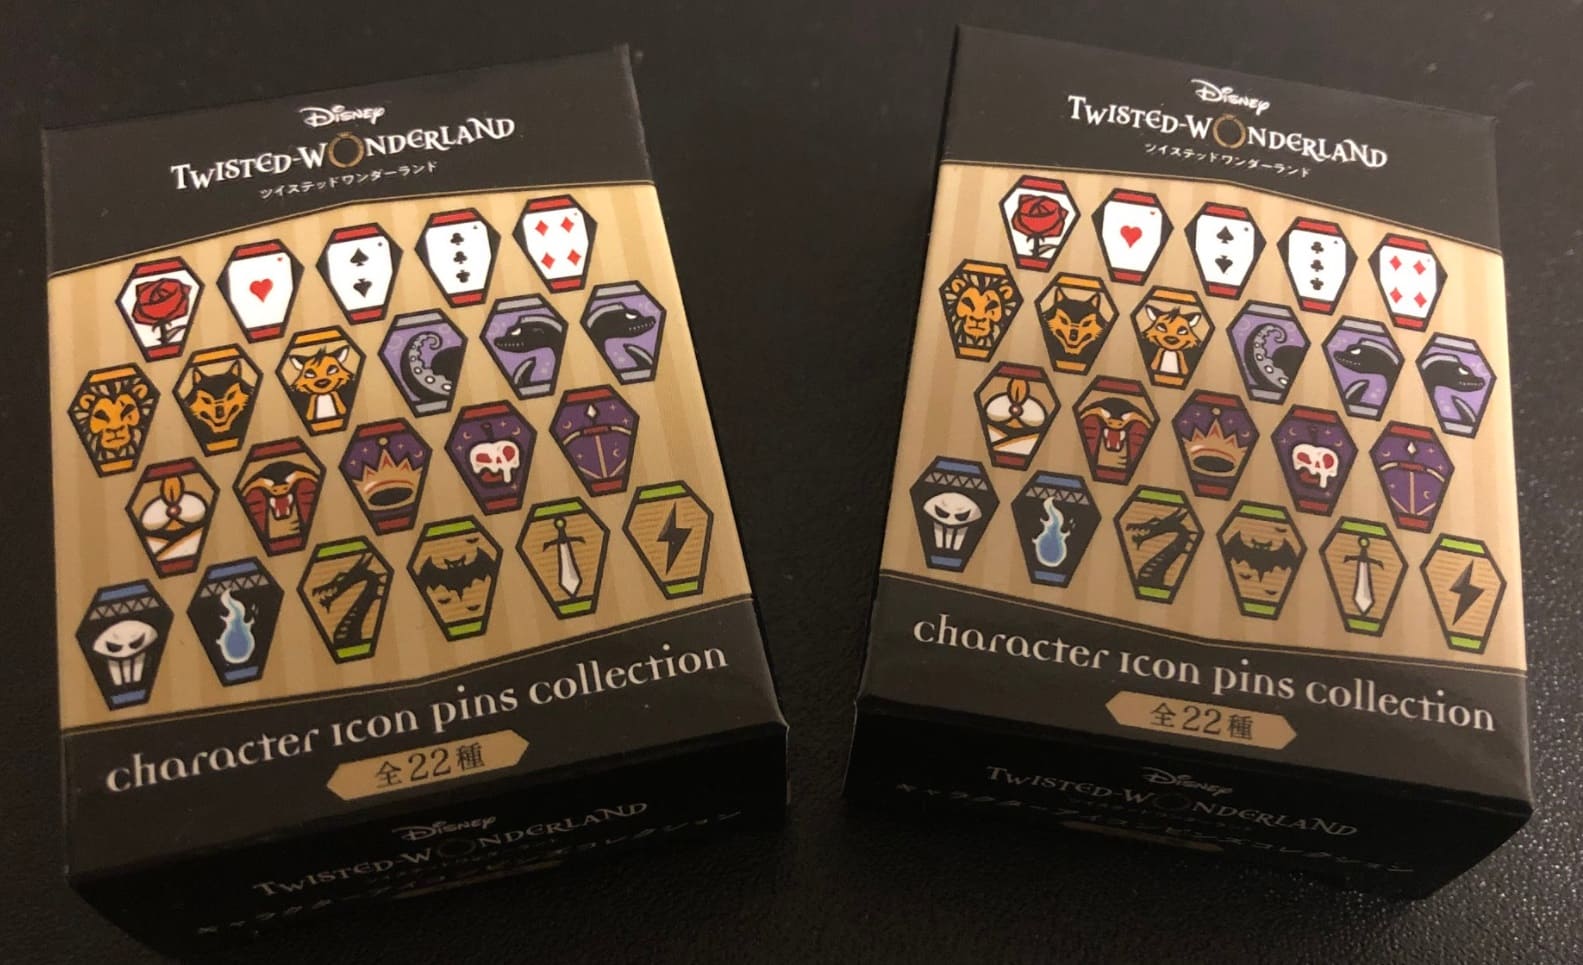 ディズニーツイステCharacter icon pins collection